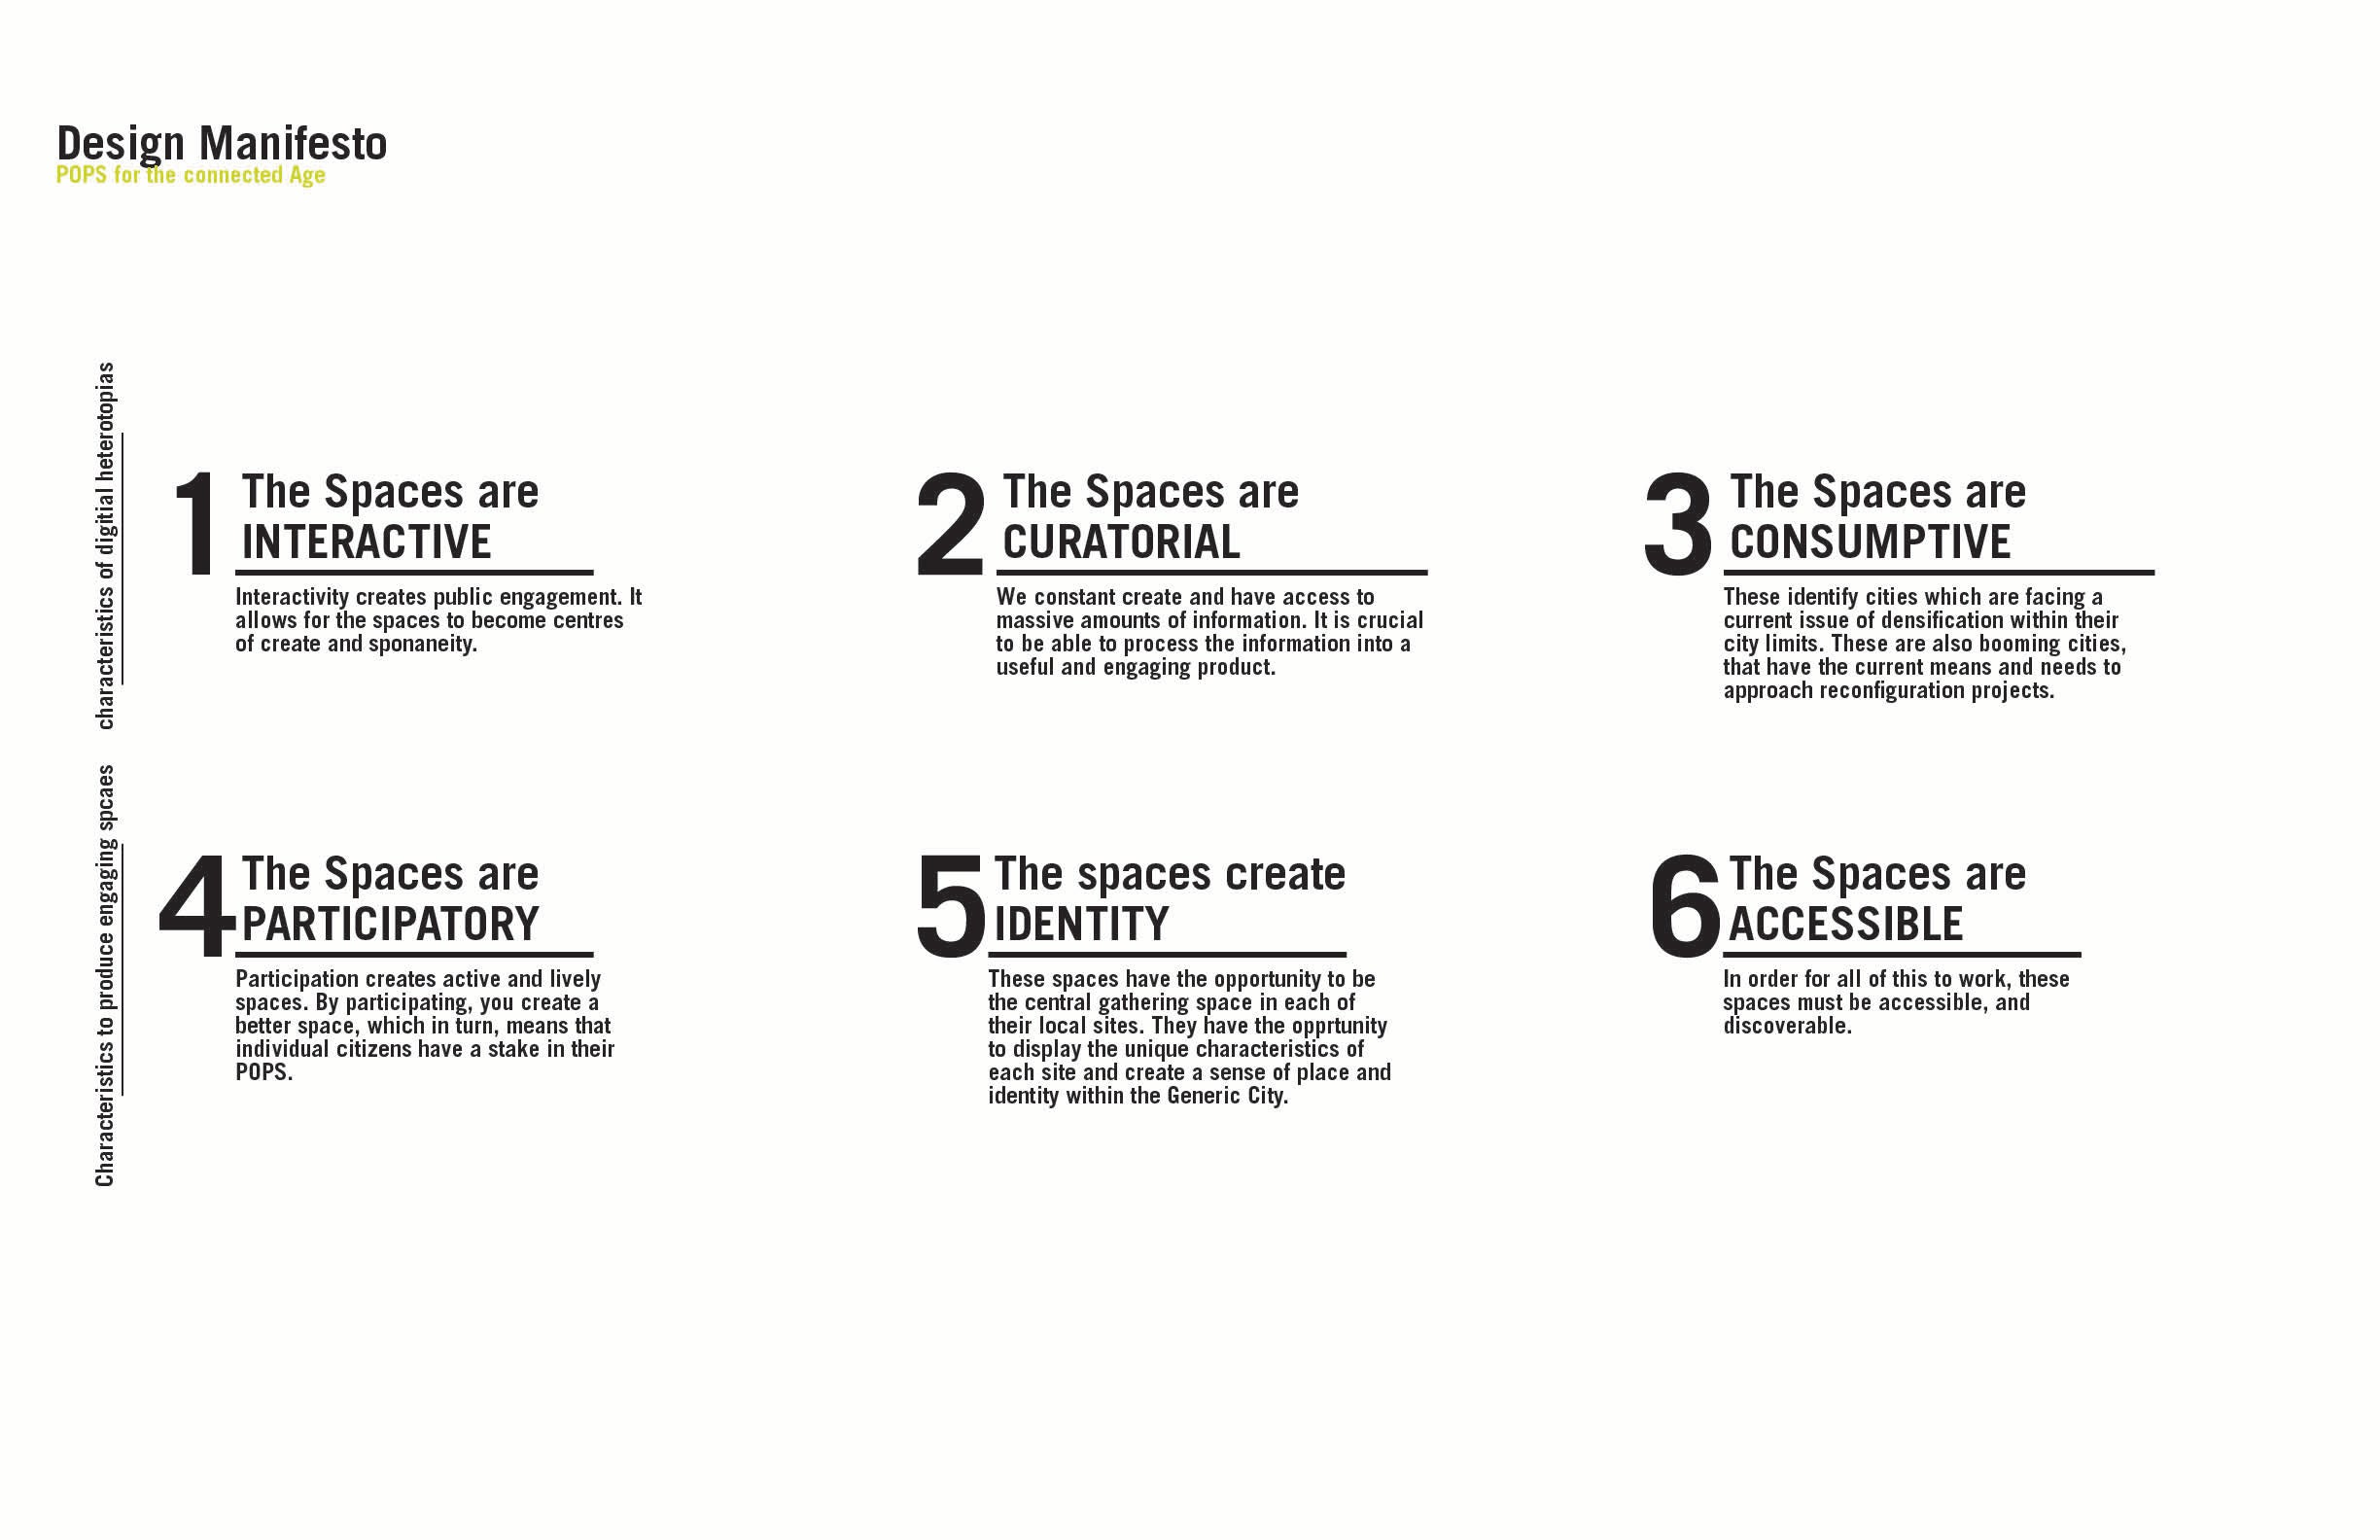 Design Manifesto for digital public heterotopias